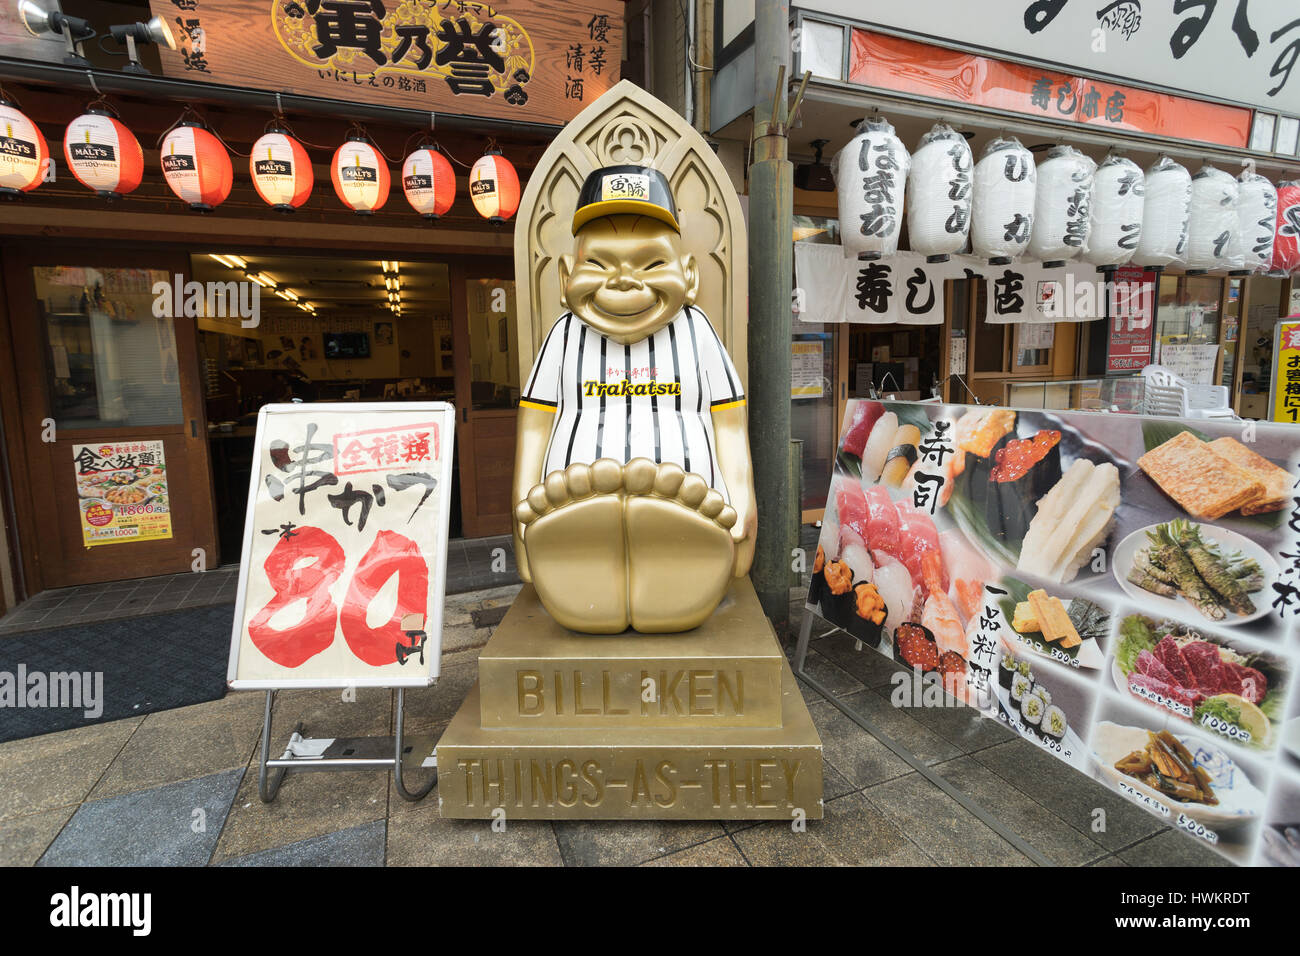 OSAKA, Giappone - 26 Aprile 2016: Statua del Billiken su Shinsekai street. Billiken è originata dall America, creato da Firenze Pretz. Foto Stock